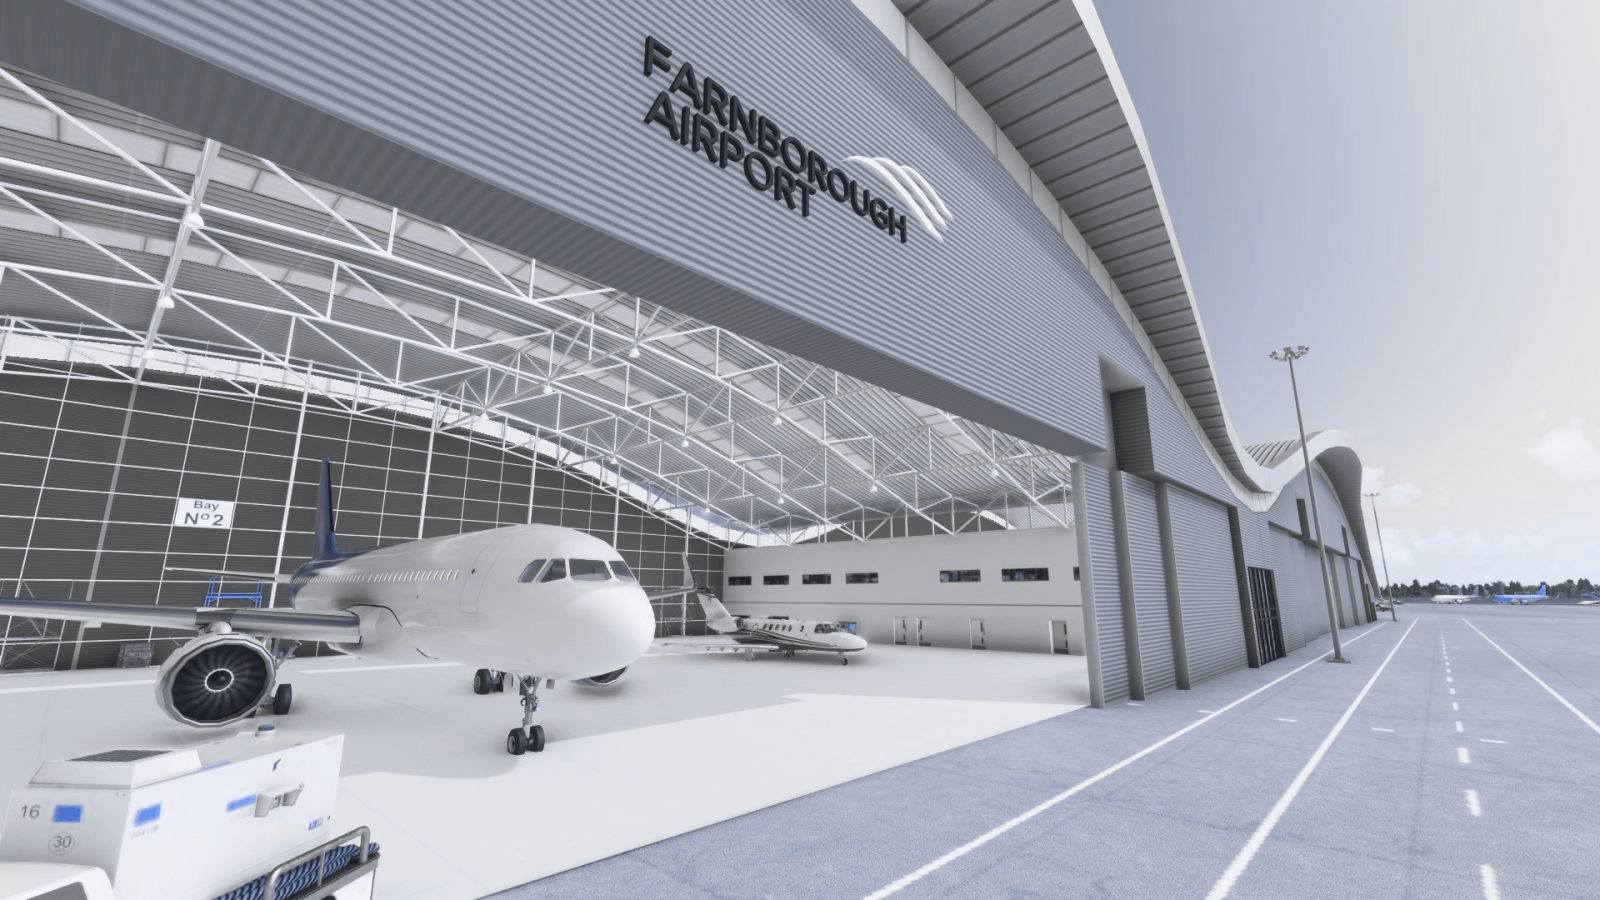 view of the hangar at Farnborough Airport